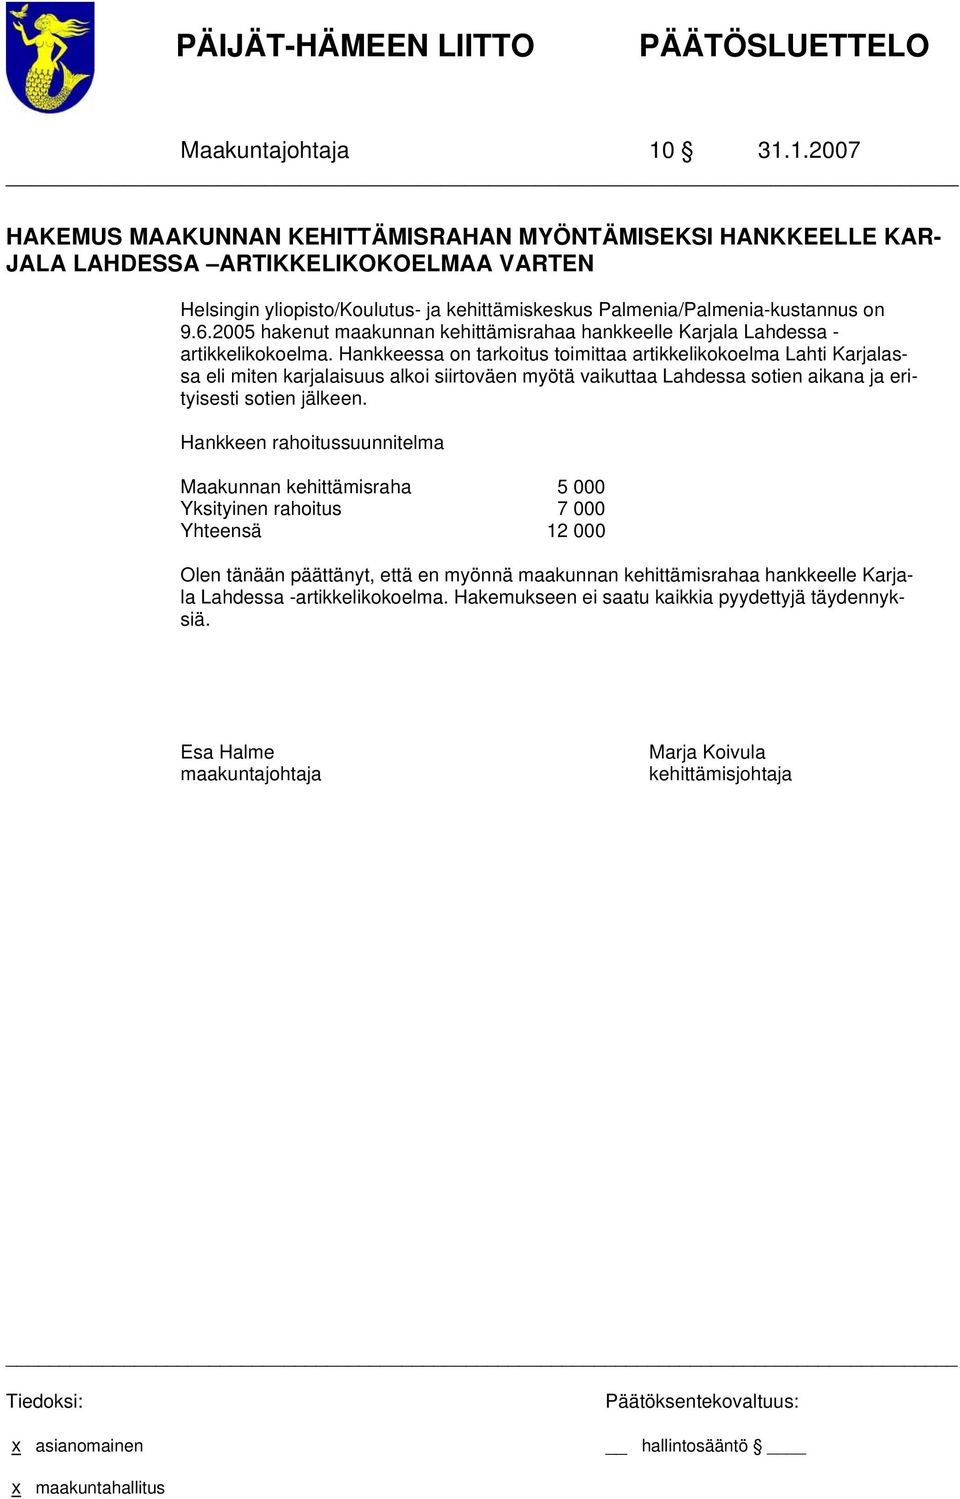 Palmenia/Palmenia-kustannus on 9.6.2005 hakenut maakunnan kehittämisrahaa hankkeelle Karjala Lahdessa - artikkelikokoelma.